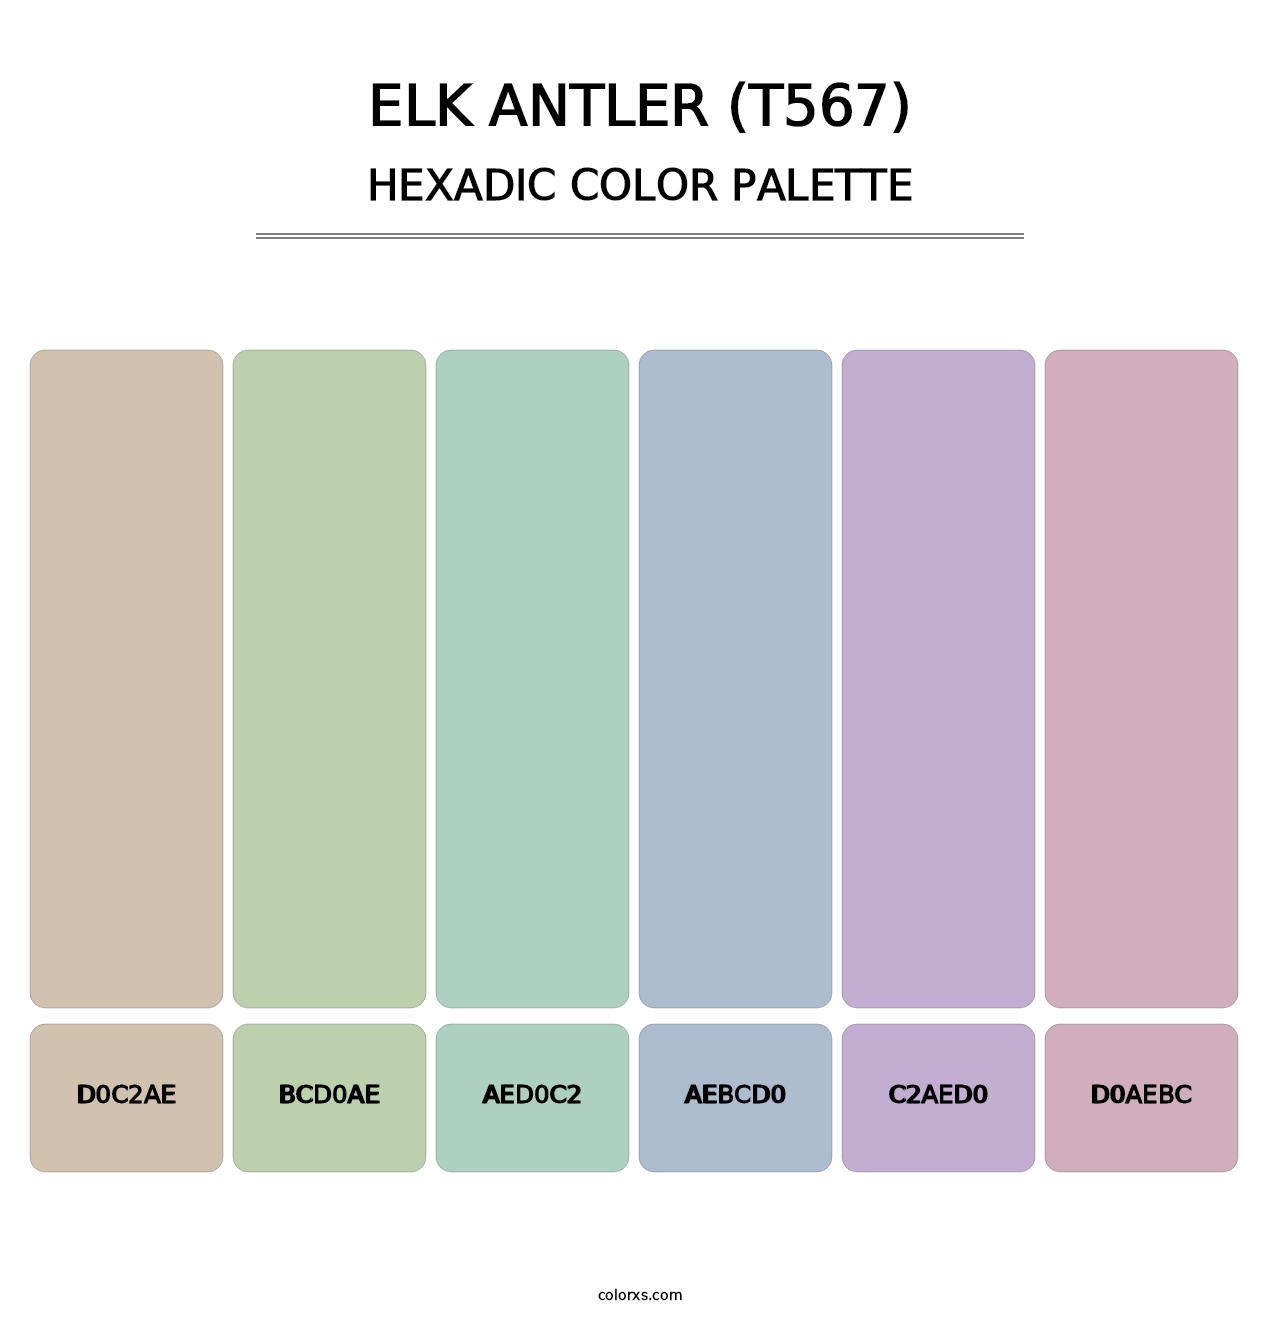 Elk Antler (T567) - Hexadic Color Palette